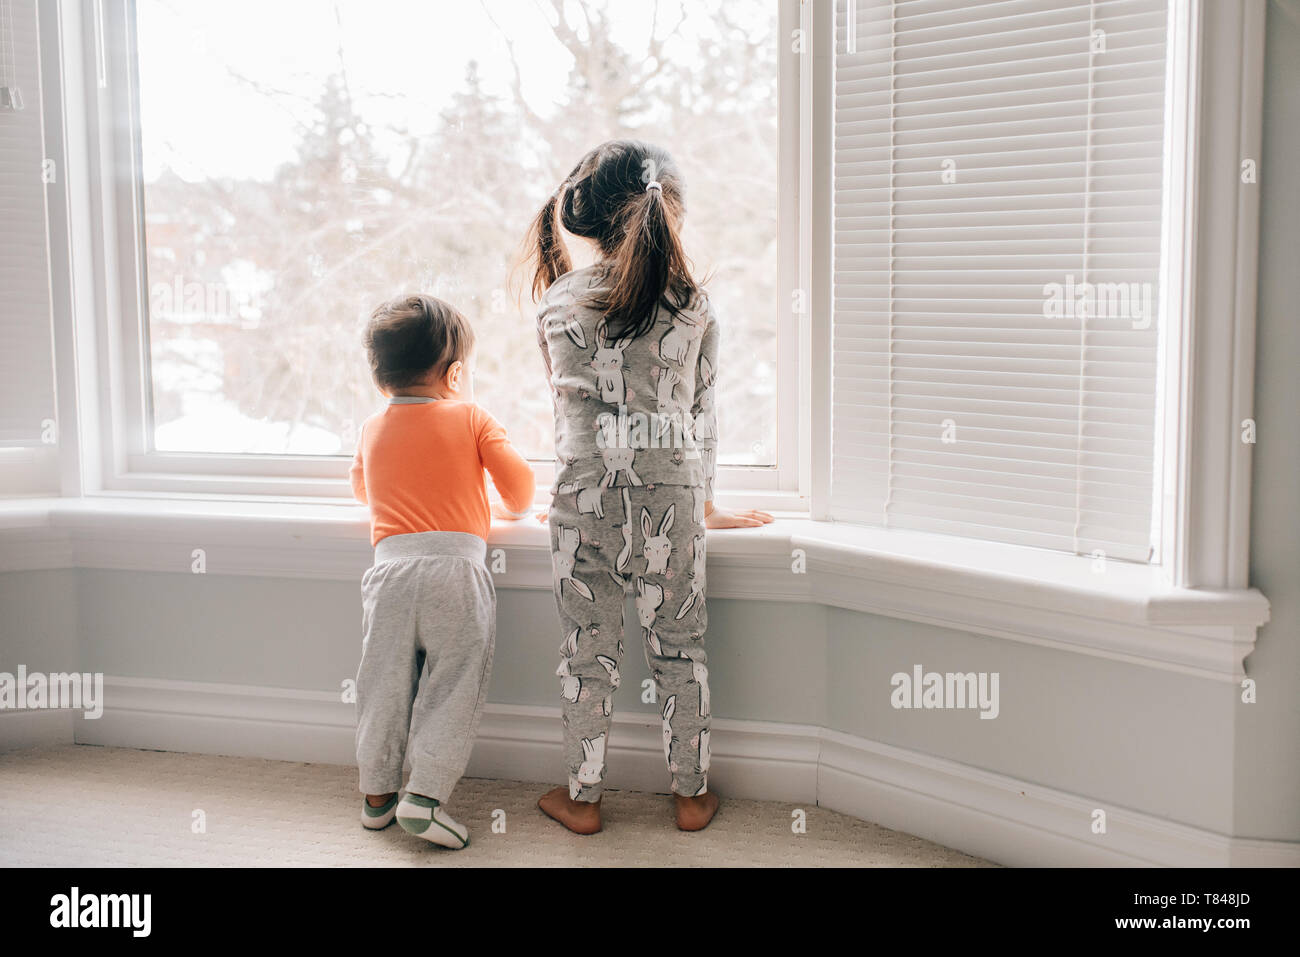 La ragazza e il fratello bambino guardando attraverso il soggiorno finestra, vista posteriore Foto Stock